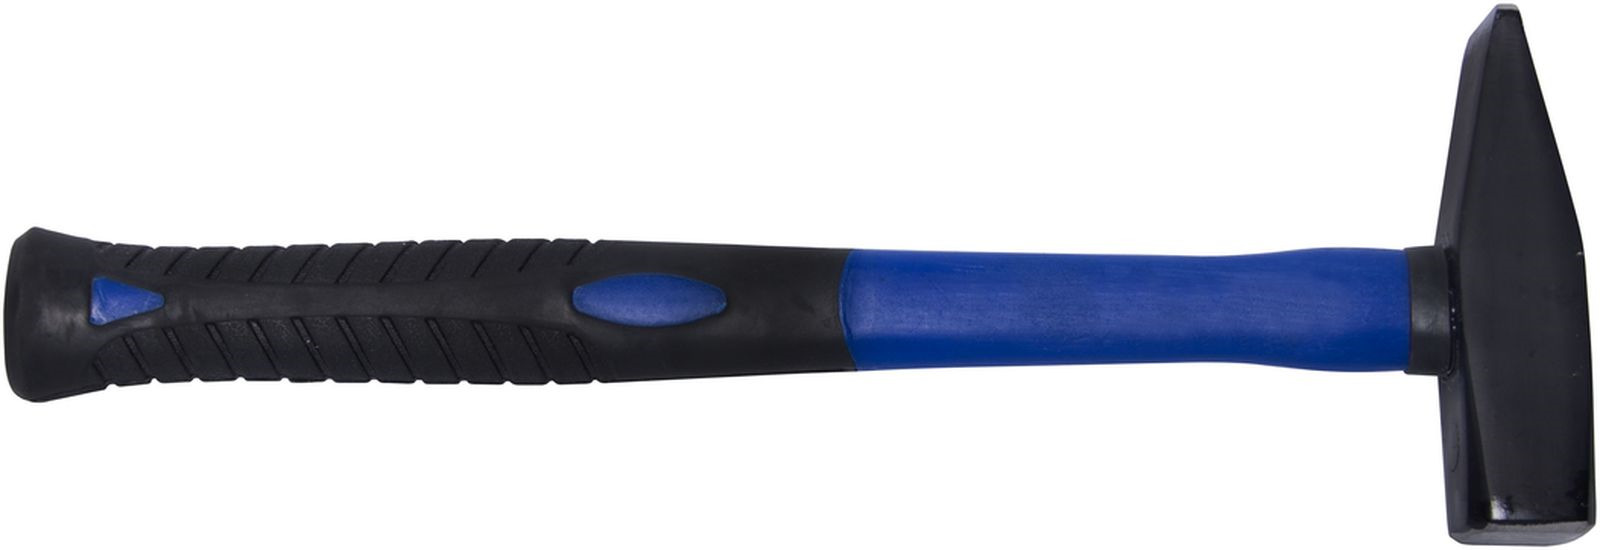 фото Молоток кованый Toolberg, фибергласовая ручка, 400 г